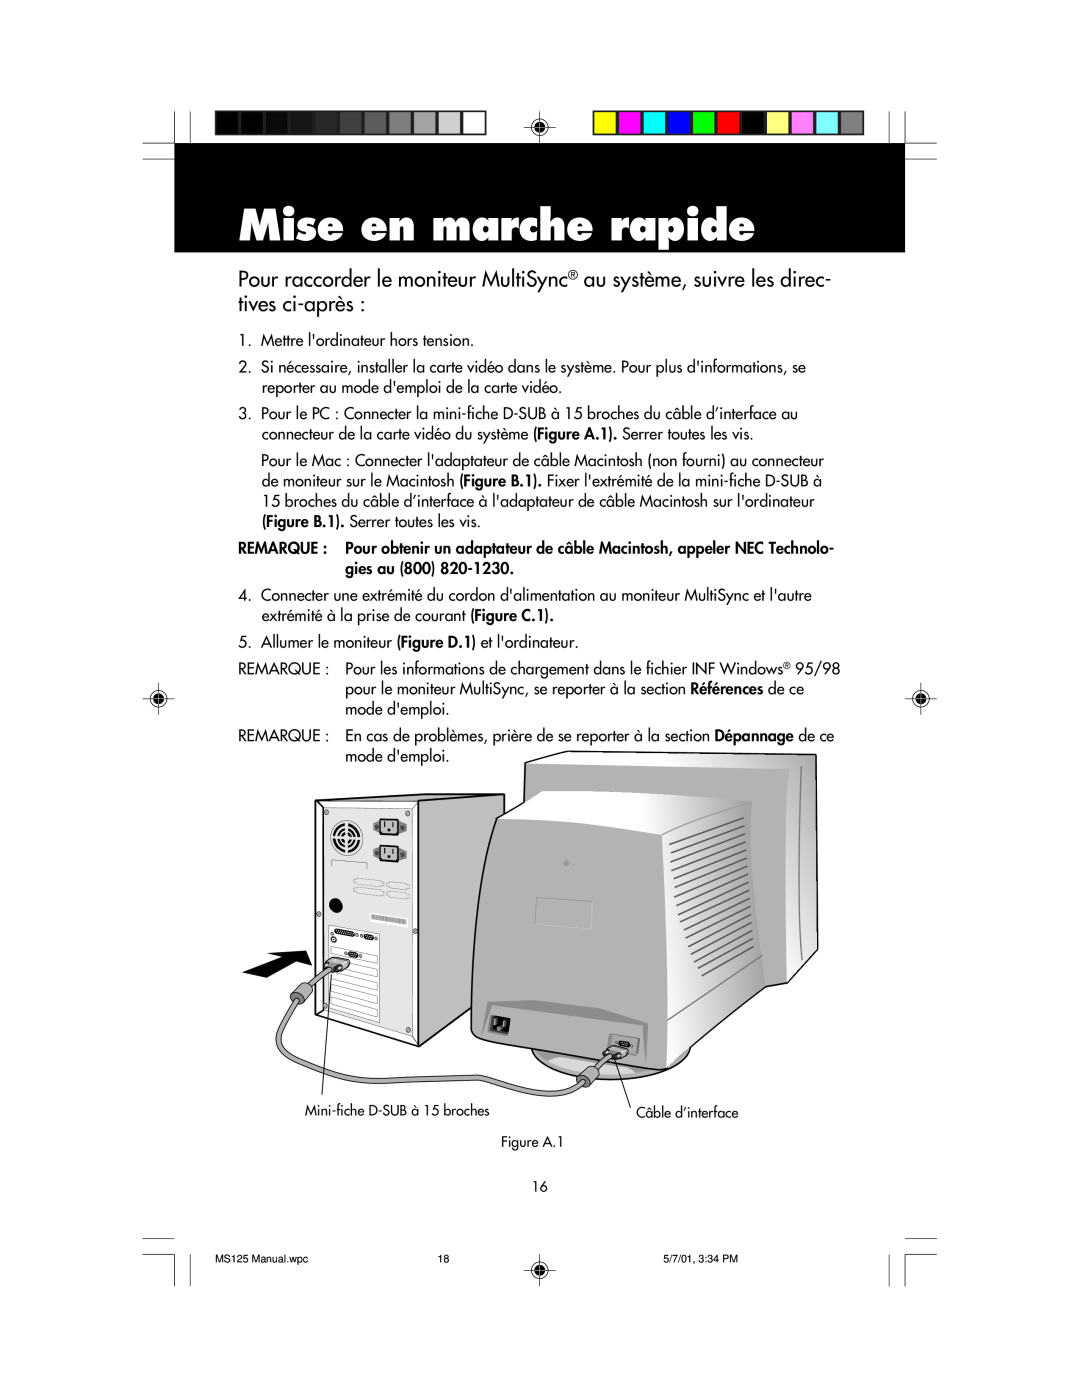 NEC MS125 manual Mise en marche rapide 